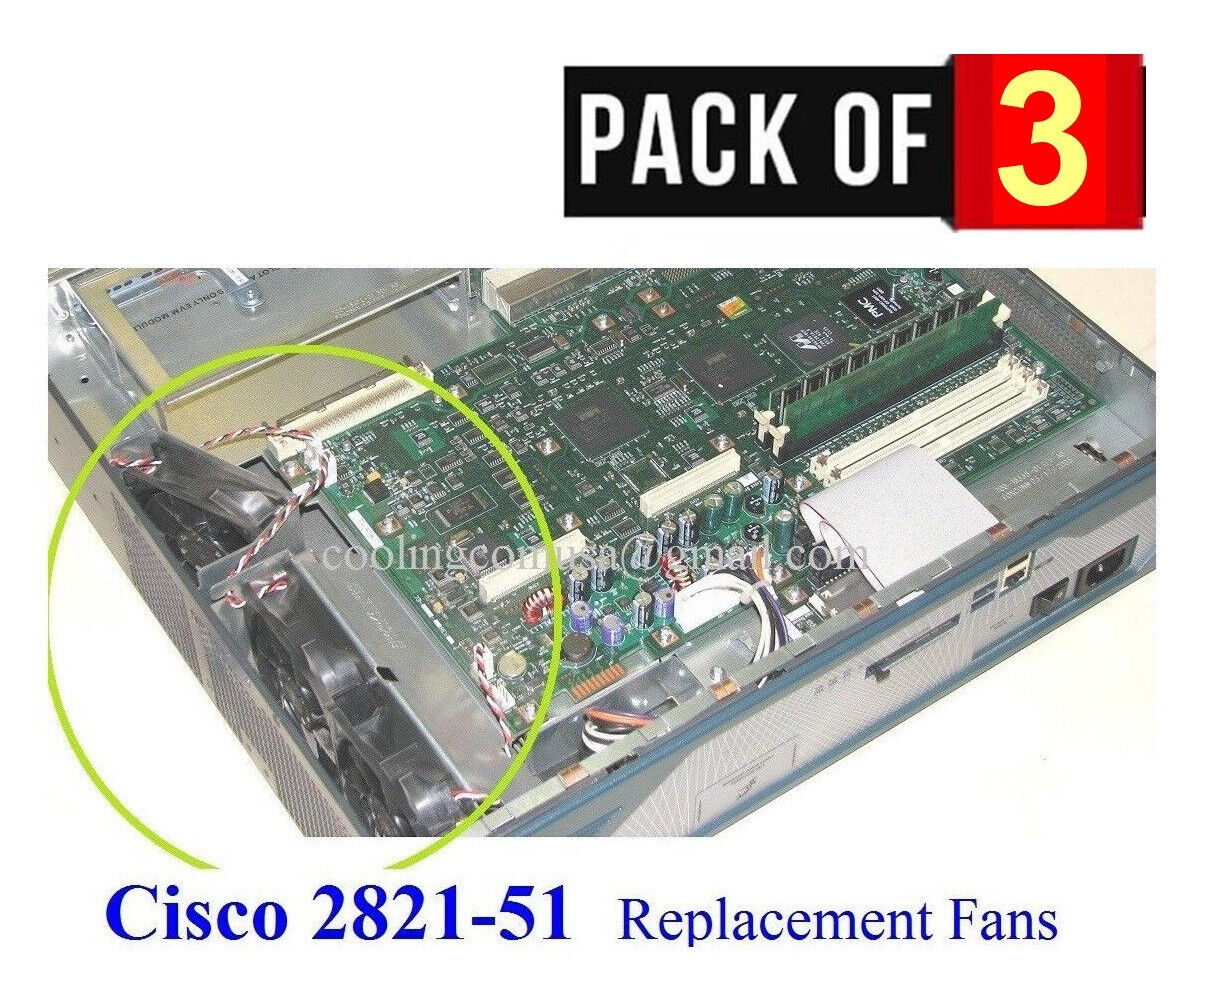 Original Cisco 2821 Router Replacement Fan Kit  (Pack 3 Fans) ACS-2821-51-FANS=